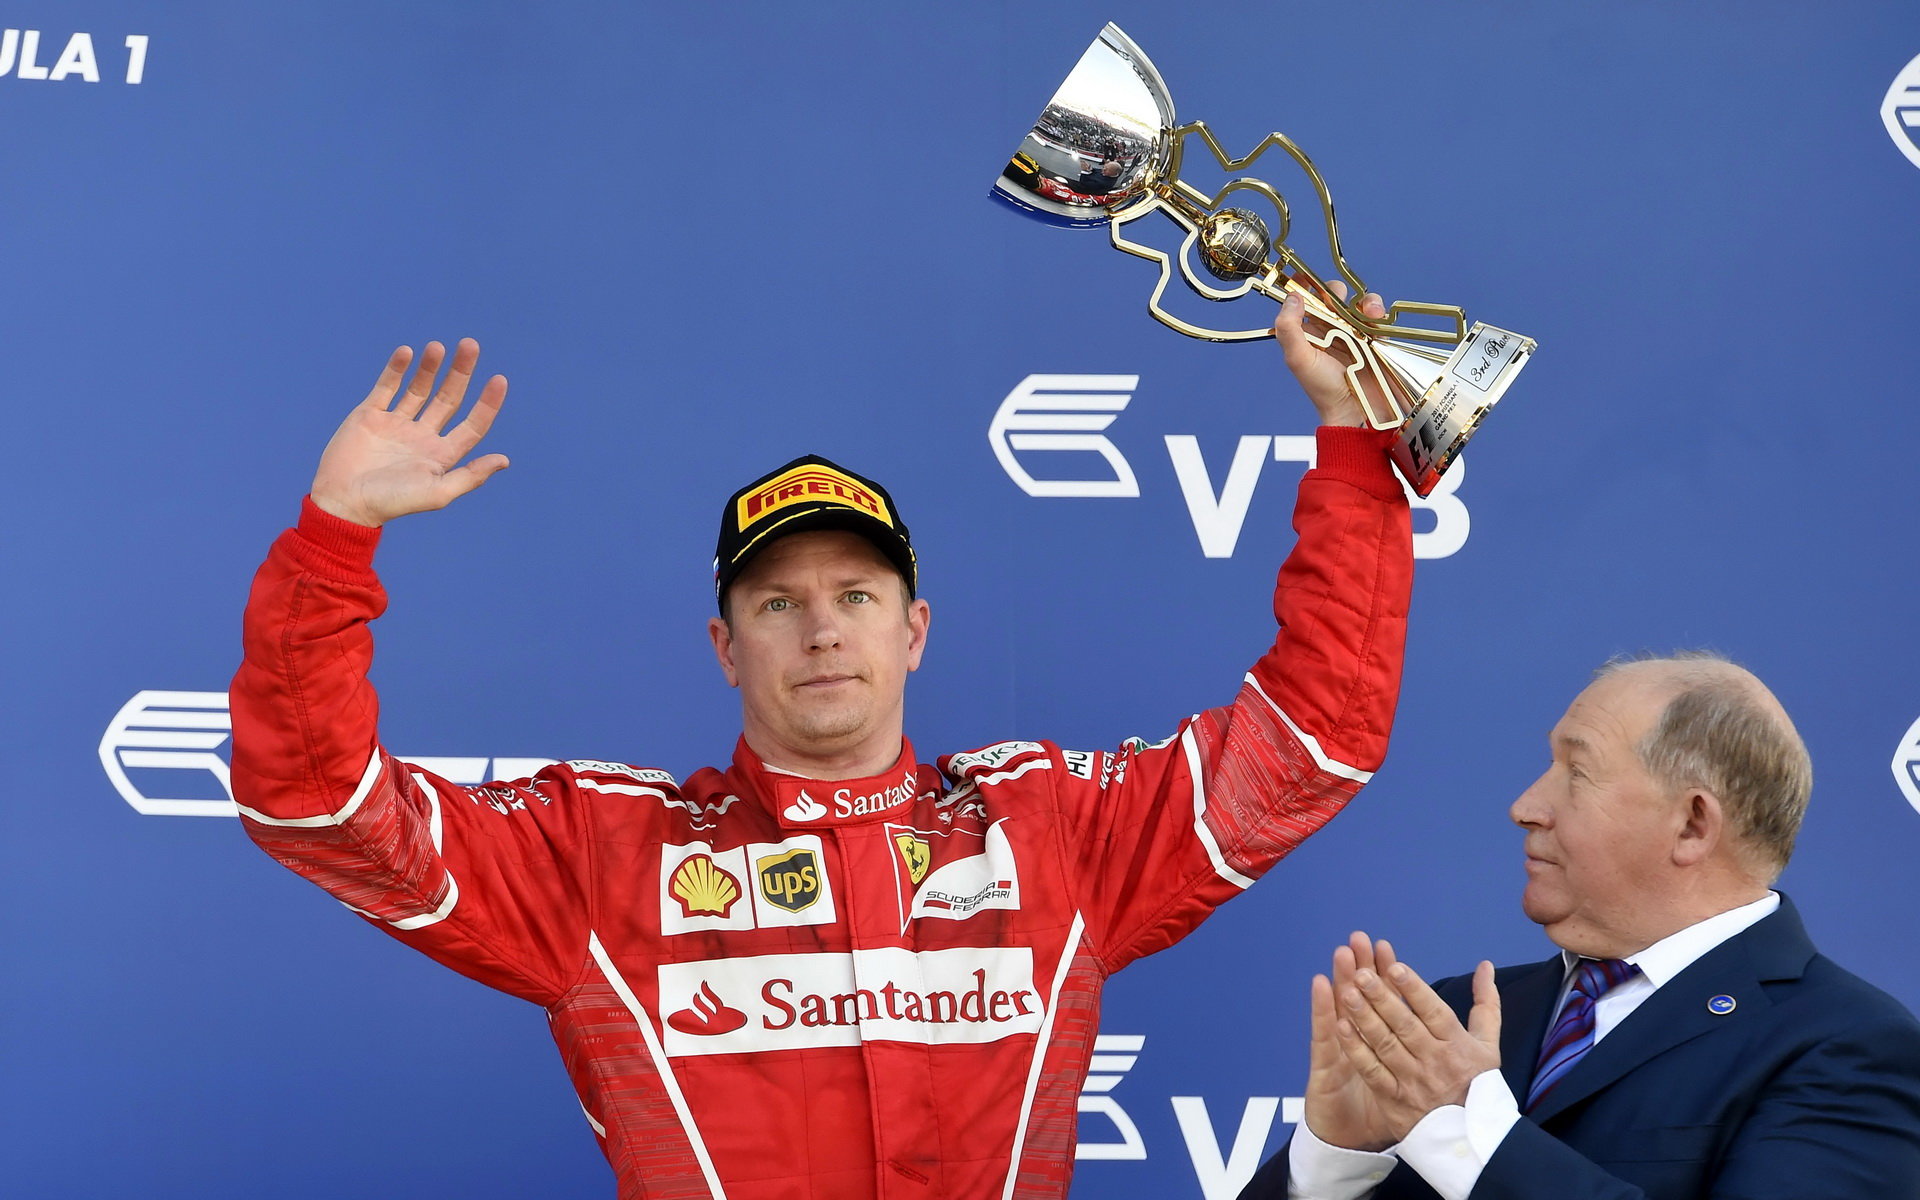 Kimi Räikkönen se svou trofejí po závodě v Soči